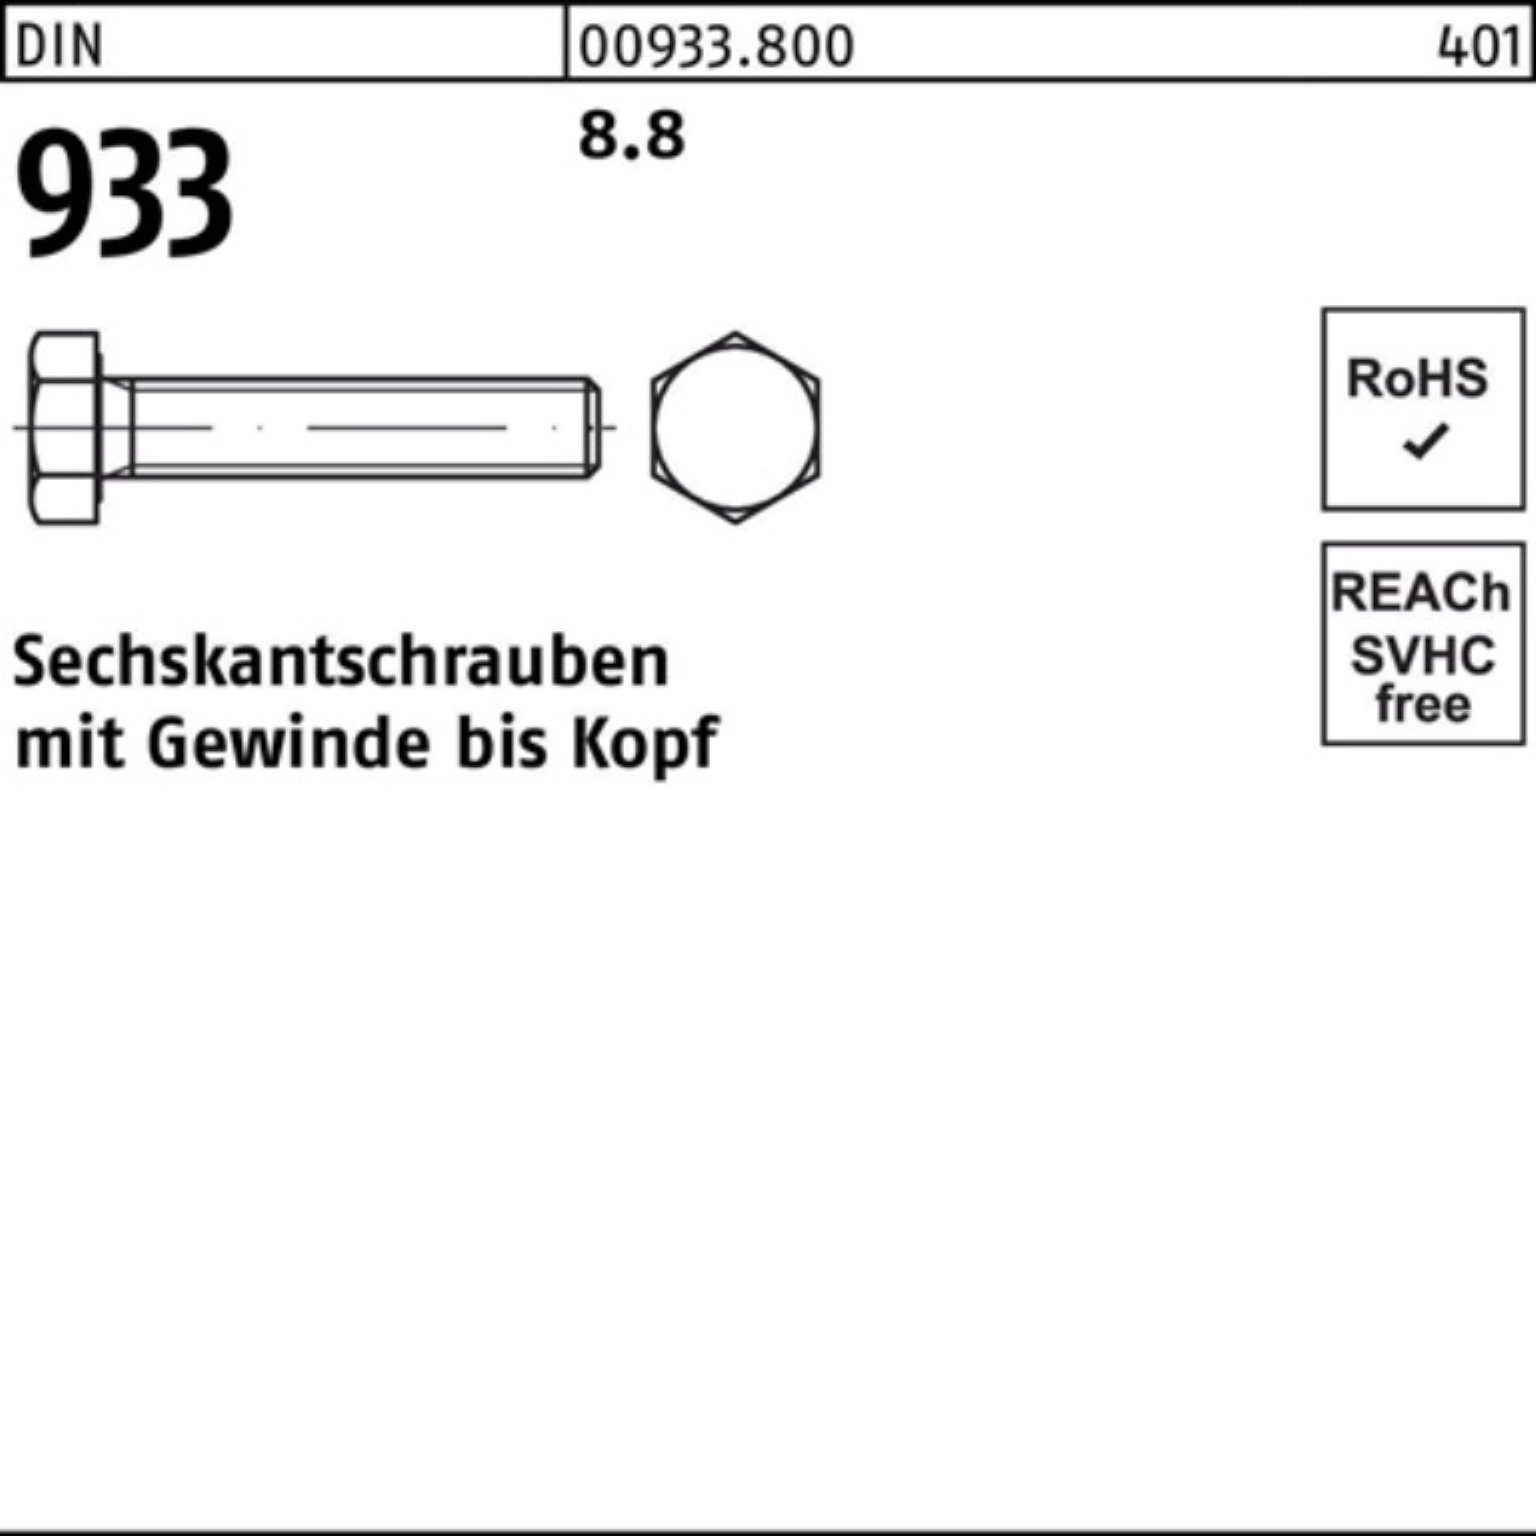 500 Stück Sechskantschraube 933 VG 500er 50 DIN Pack Sechskantschraube M4x 933 DIN Reyher 8.8